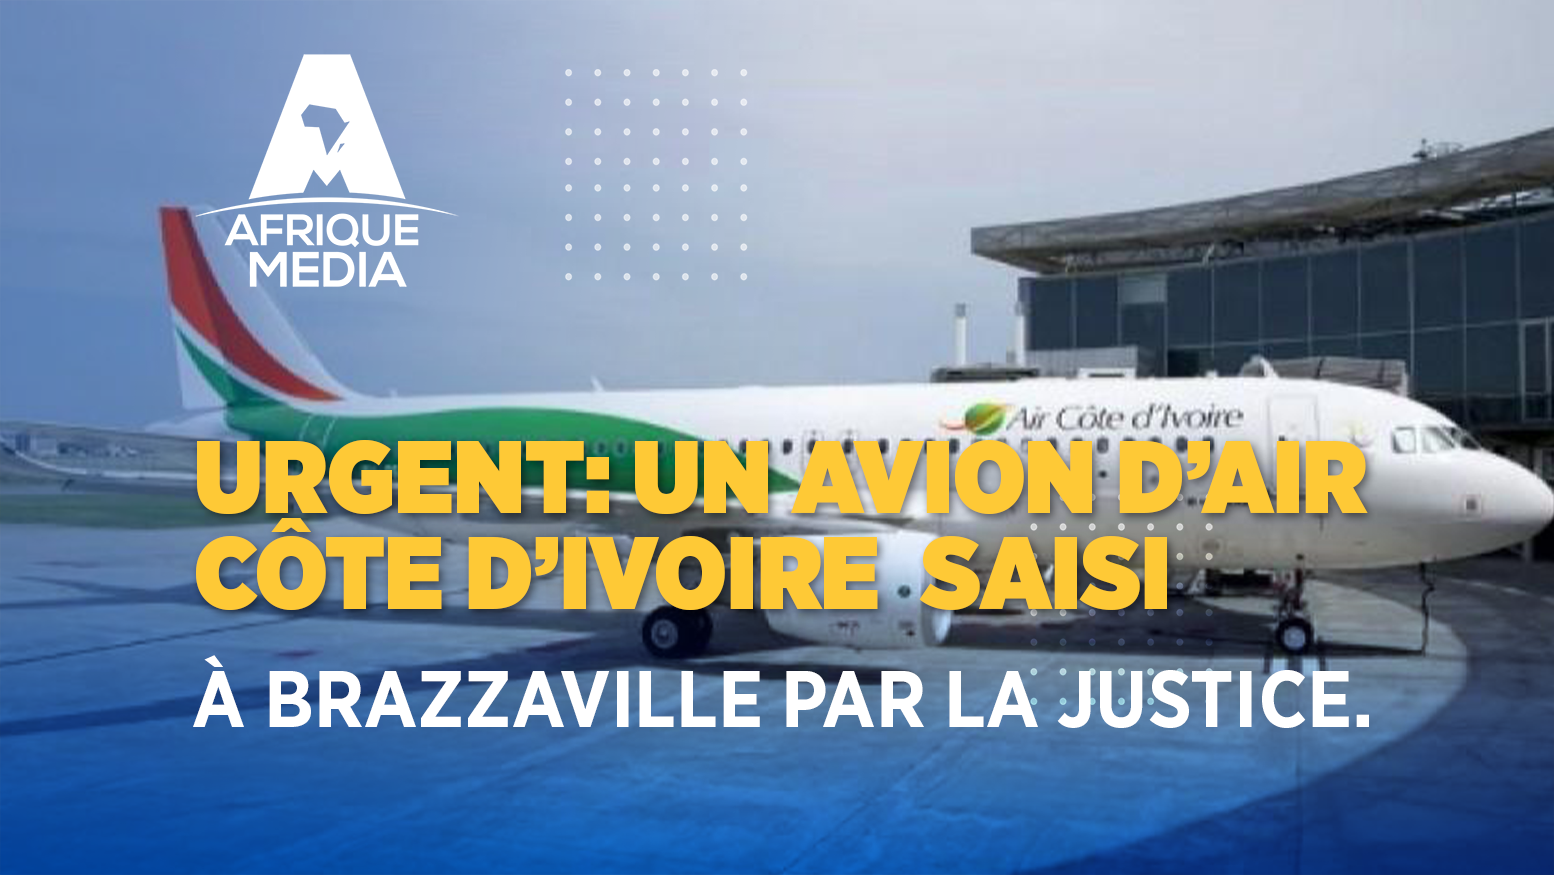 Urgent: un avion d’Air Côte d’Ivoire  saisi à Brazzaville par la justice.